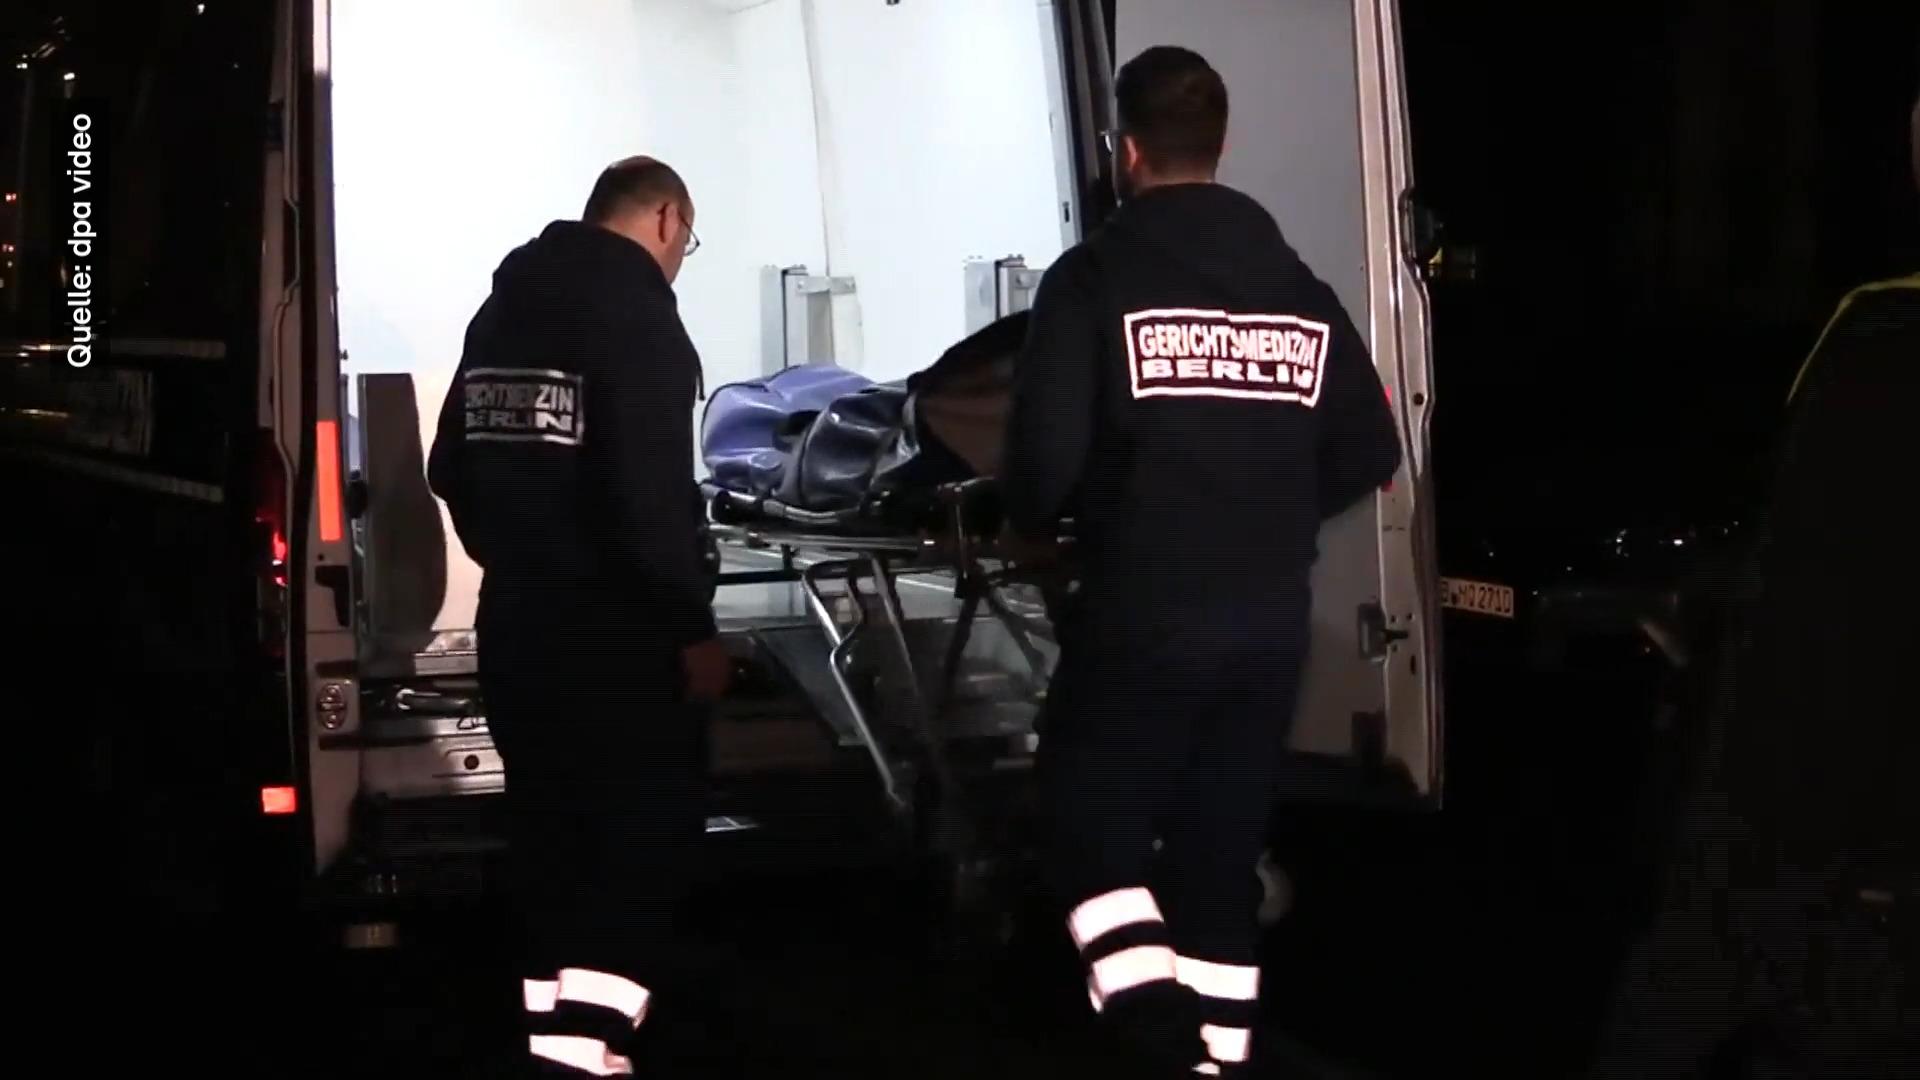 Detectives de homicidios encuentran un cadáver en un burdel de Berlín